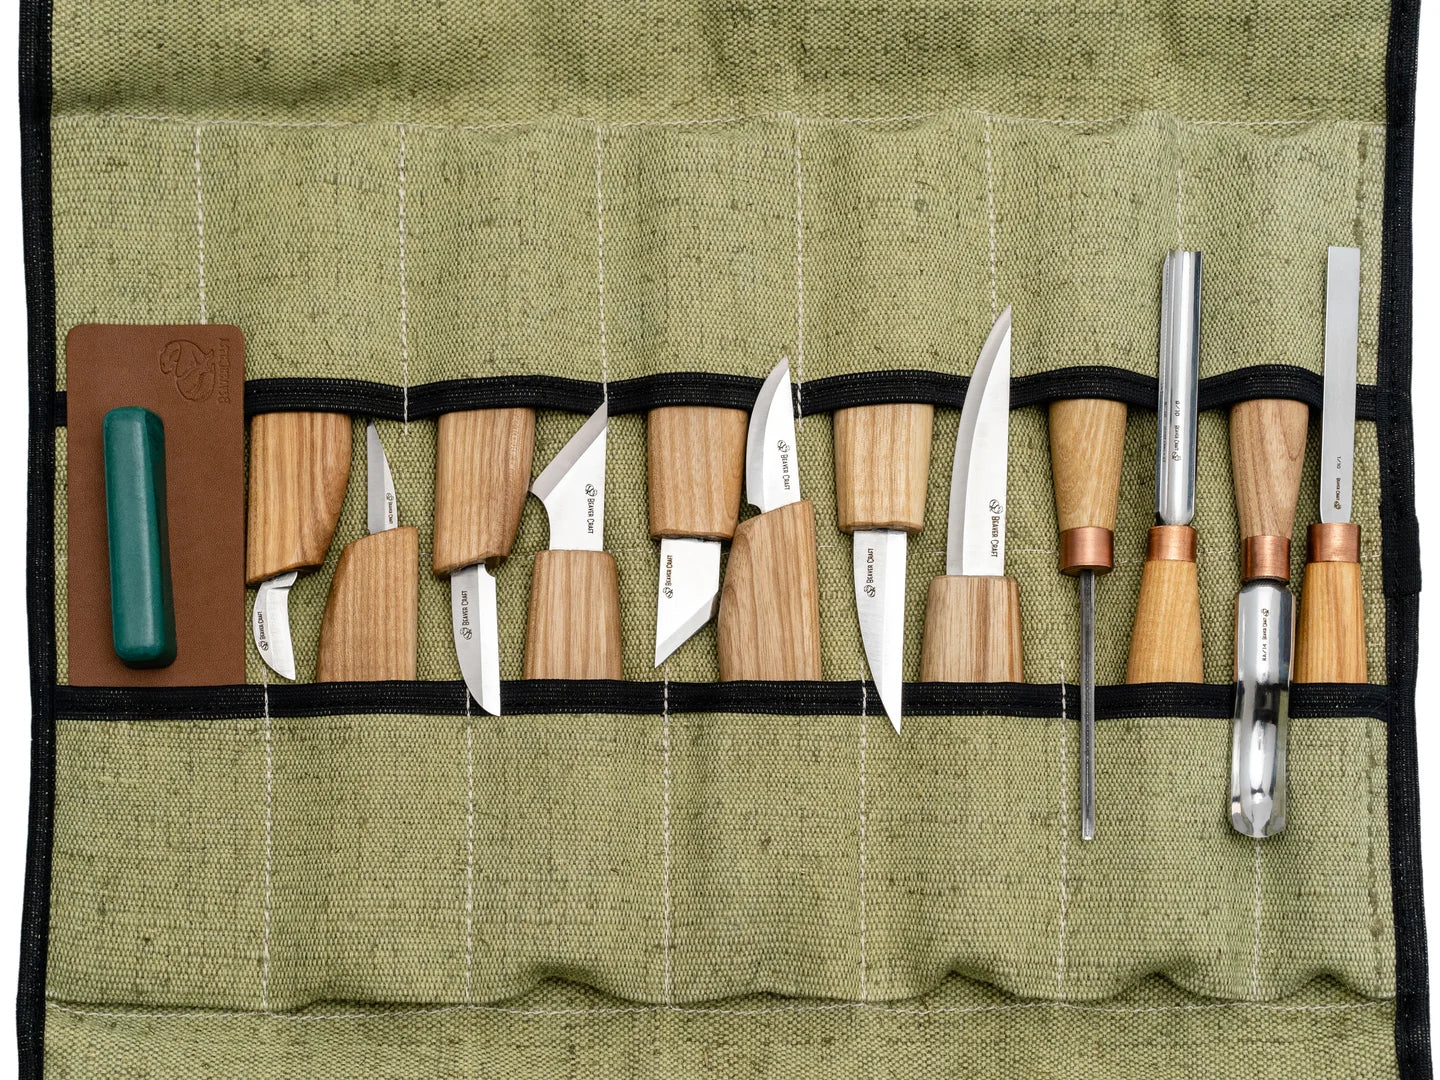 S12 - Starter Wood Carving Knife Set